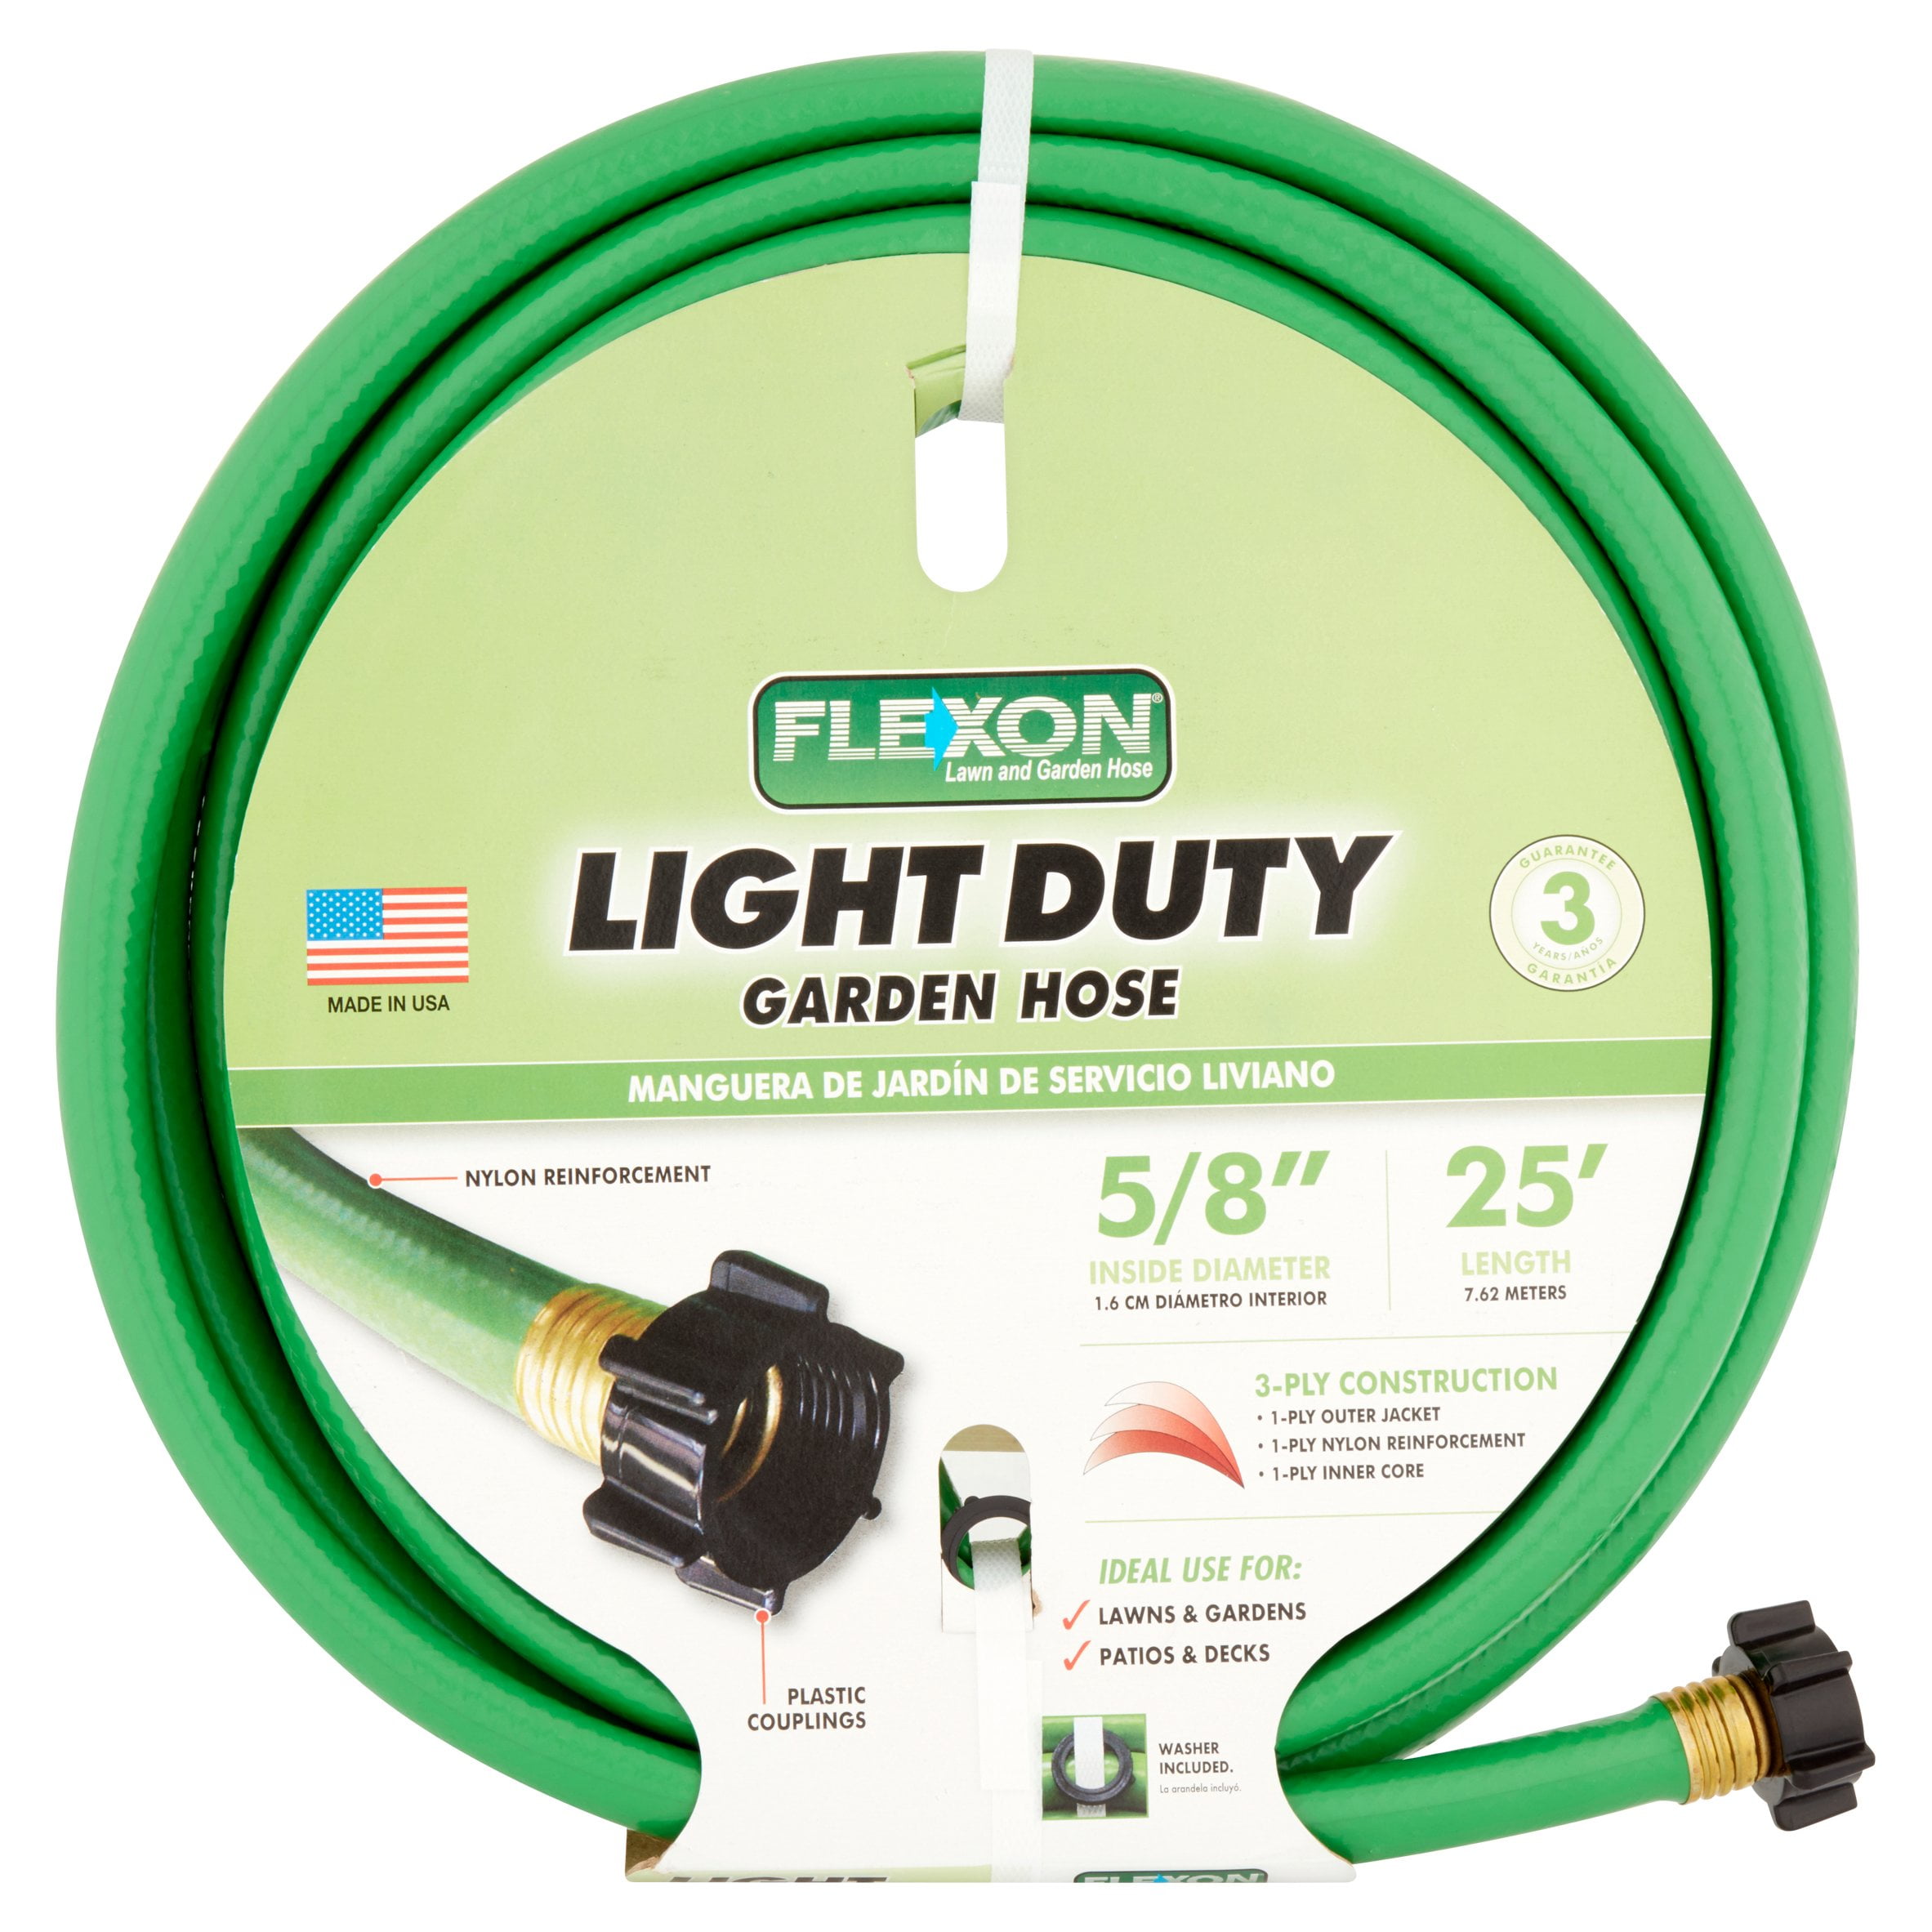 Flexon Light Duty Garden Hose Walmart Com